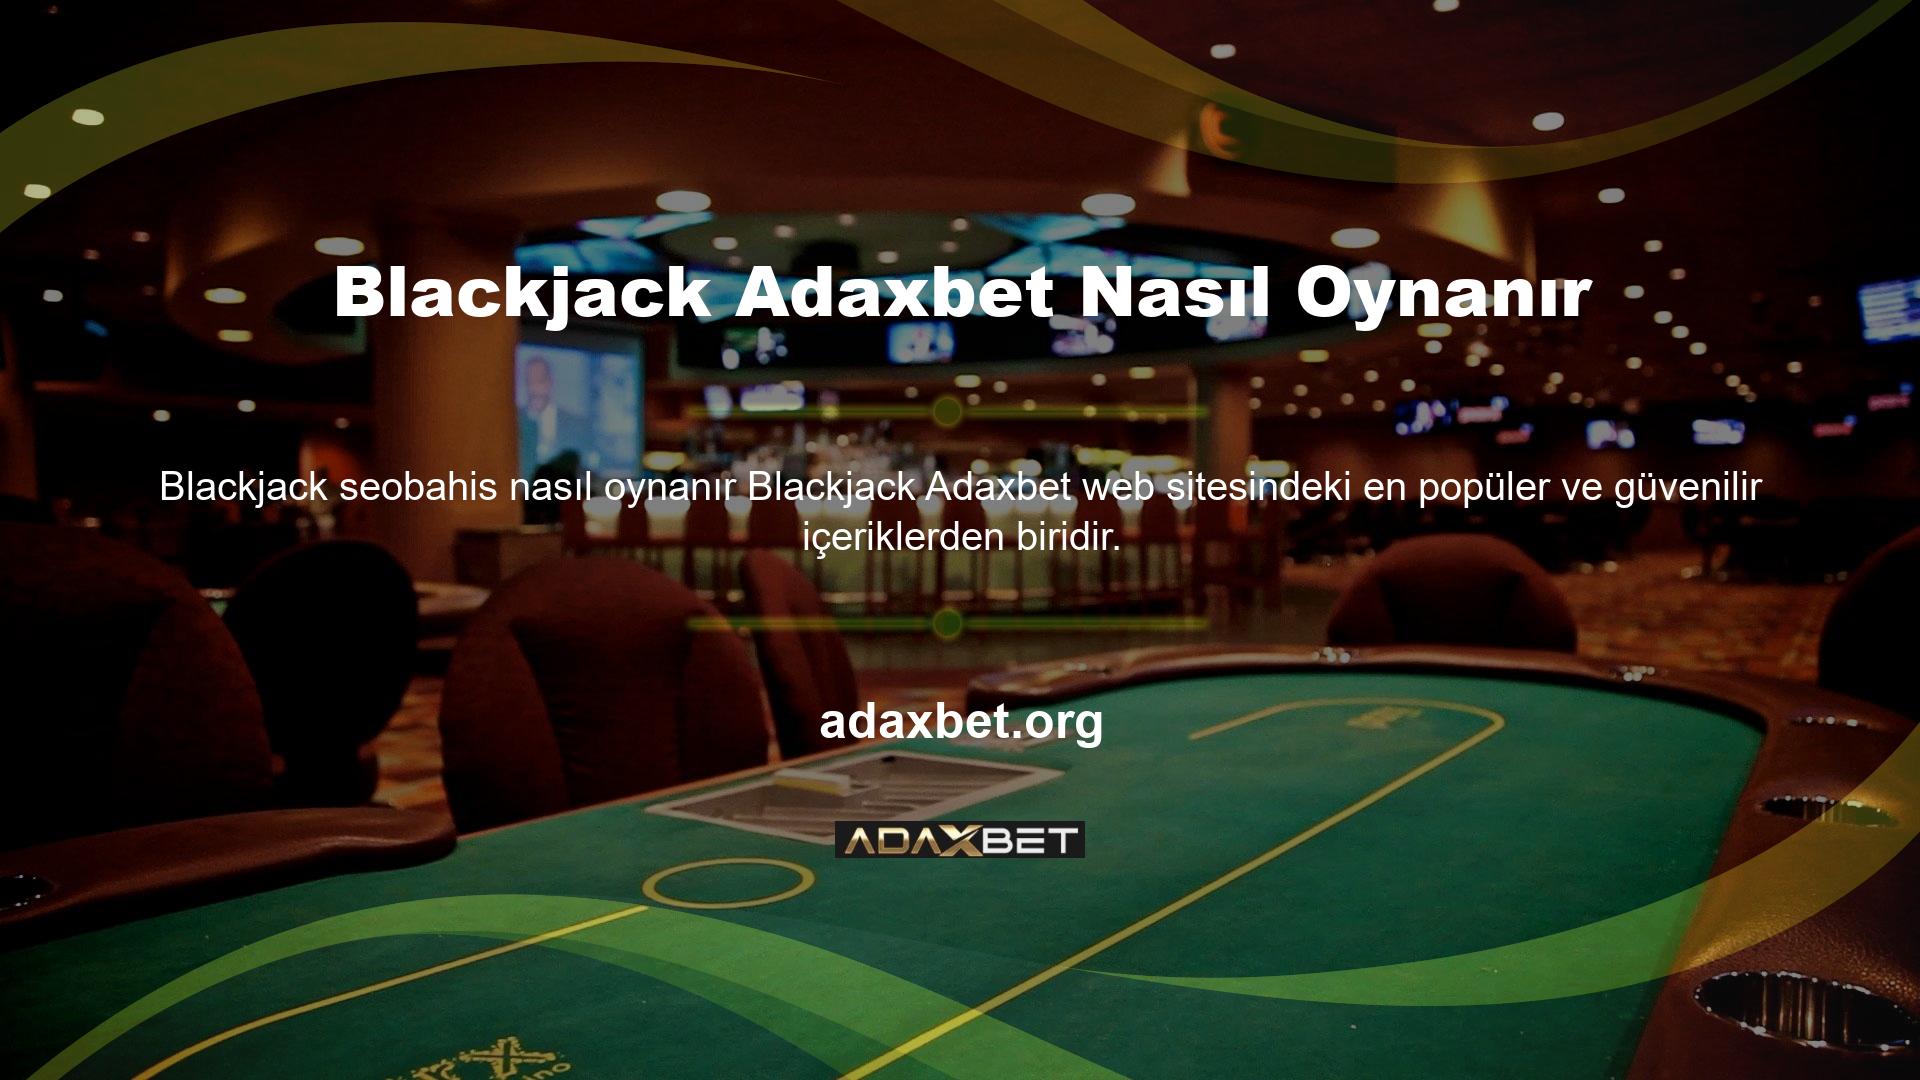 Blackjack oynamak için öncelikle sitede bir kayıt işlemini tamamlamanız gerekir